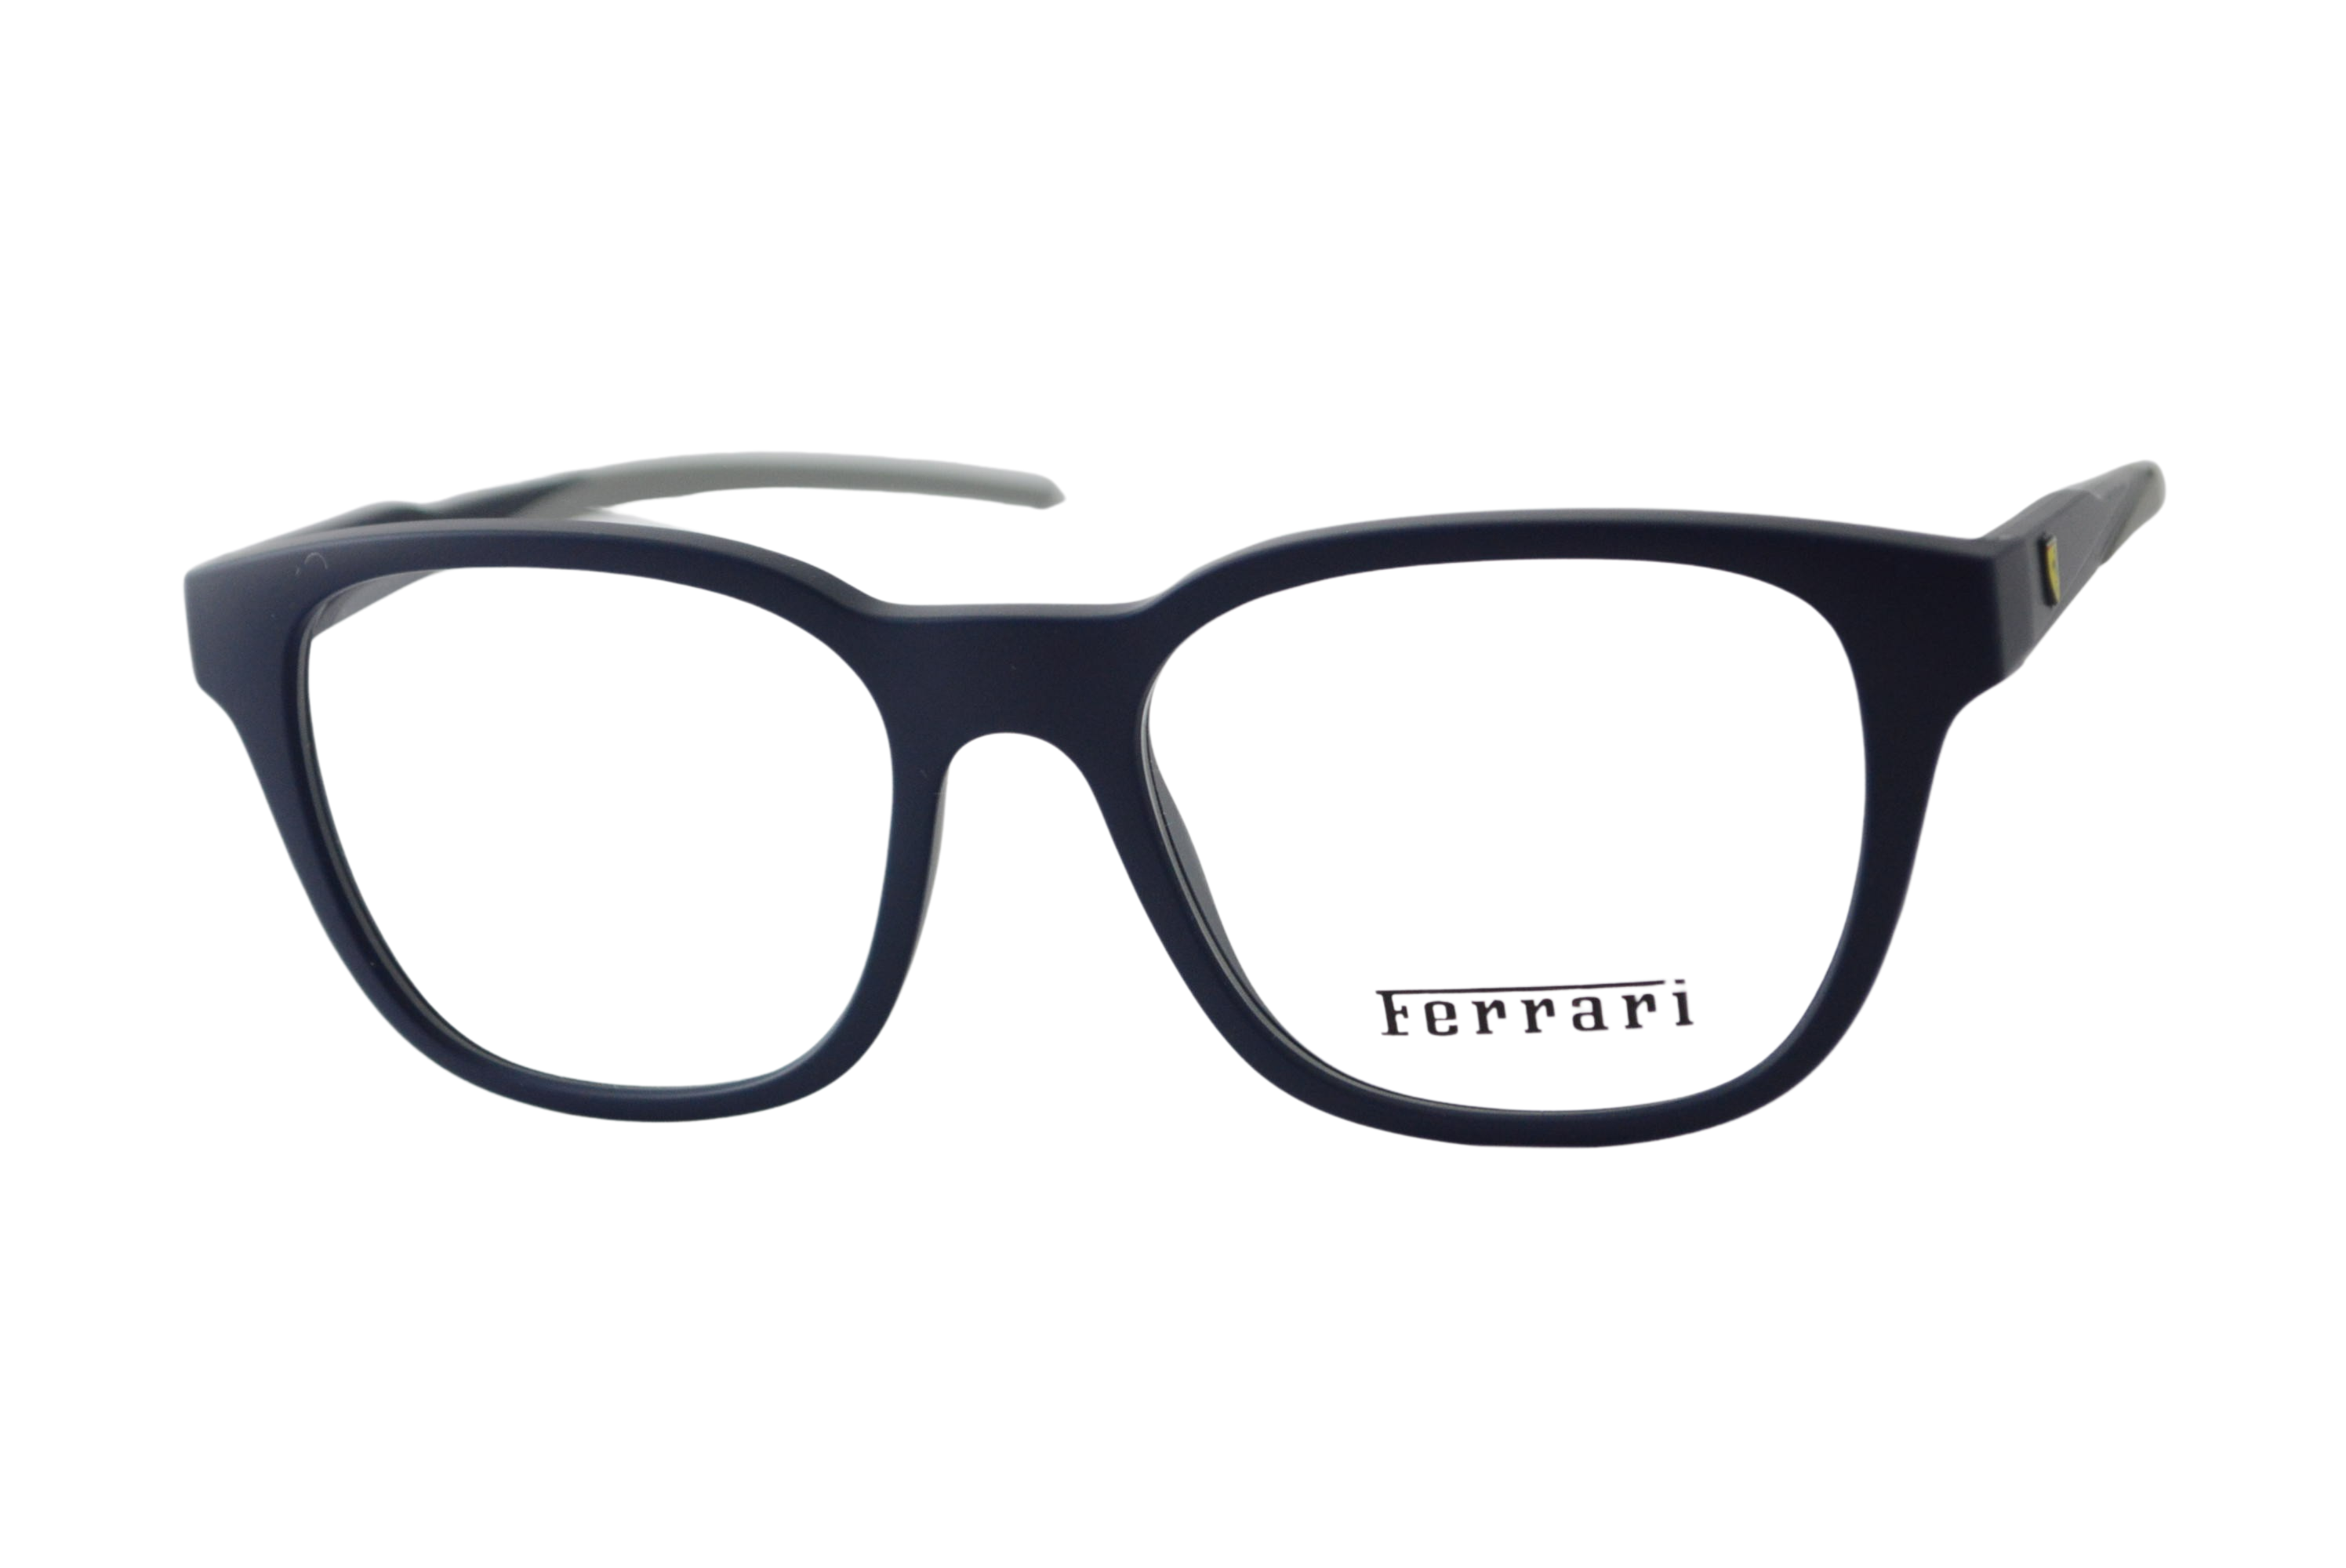 armação de óculos Ferrari mod fz8006 509